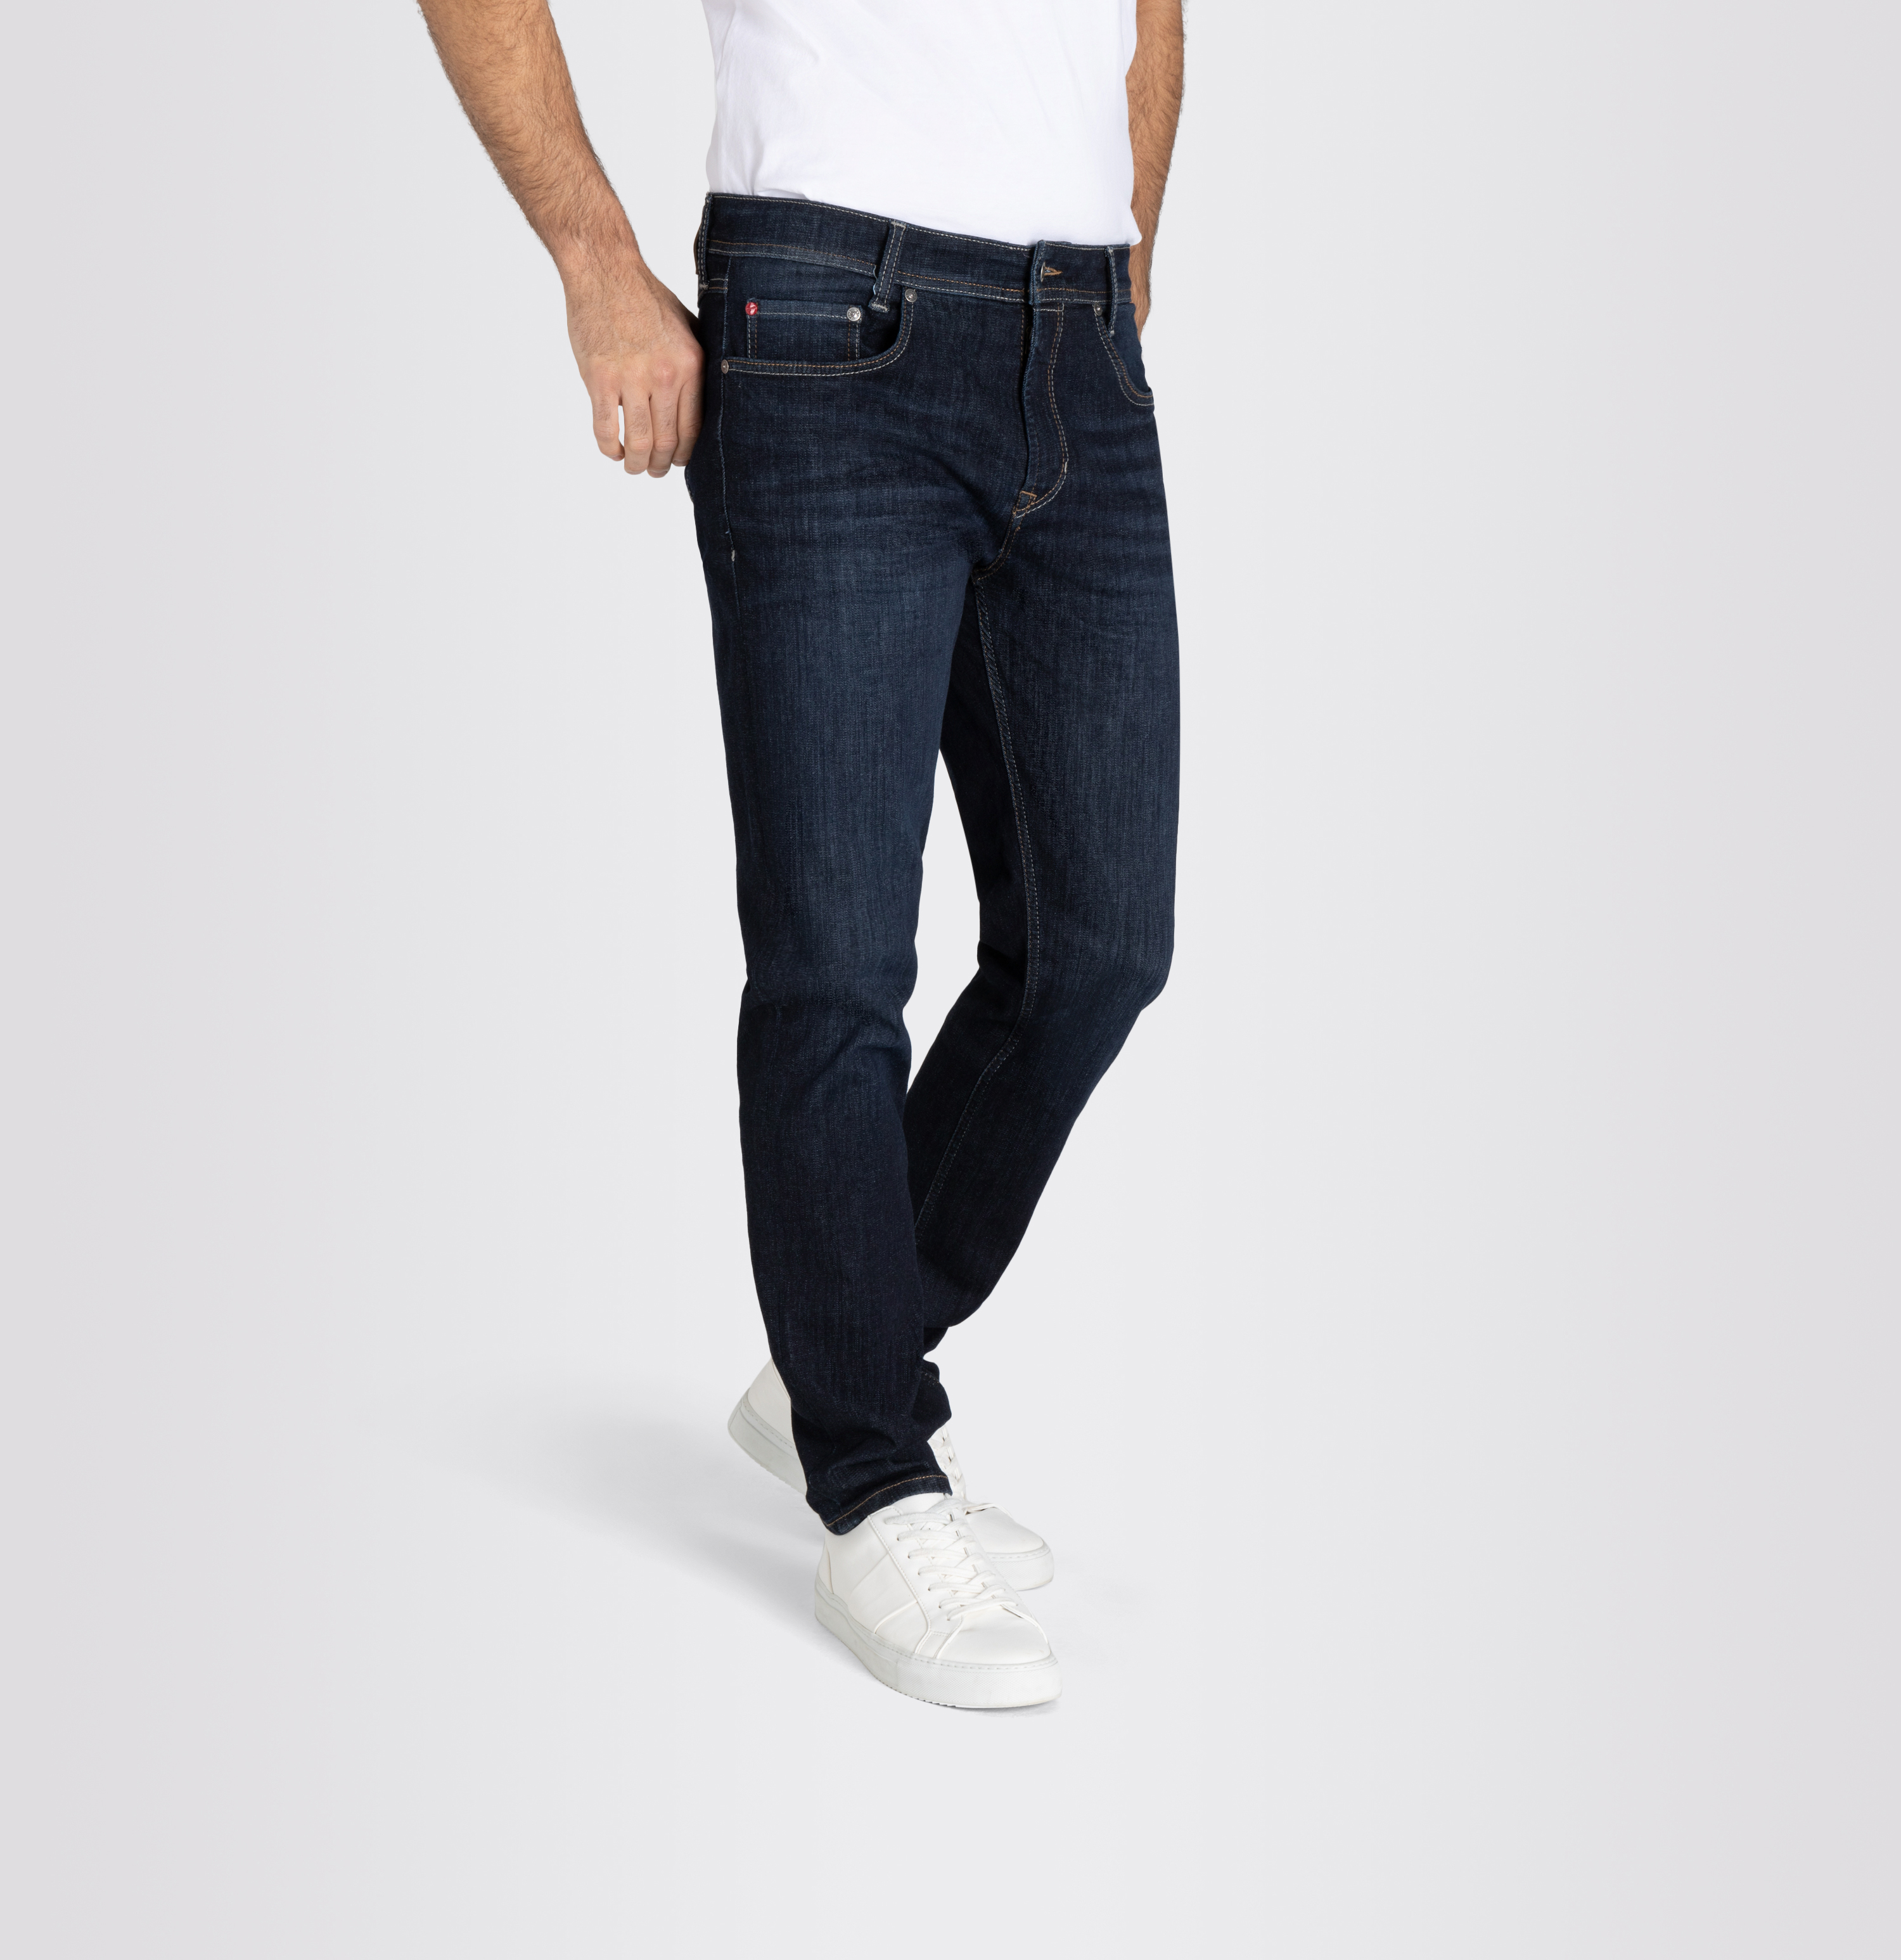 dunkelblau Jeans Herrenhose, H736 Macflexx, MAC Macflexx, | Shop